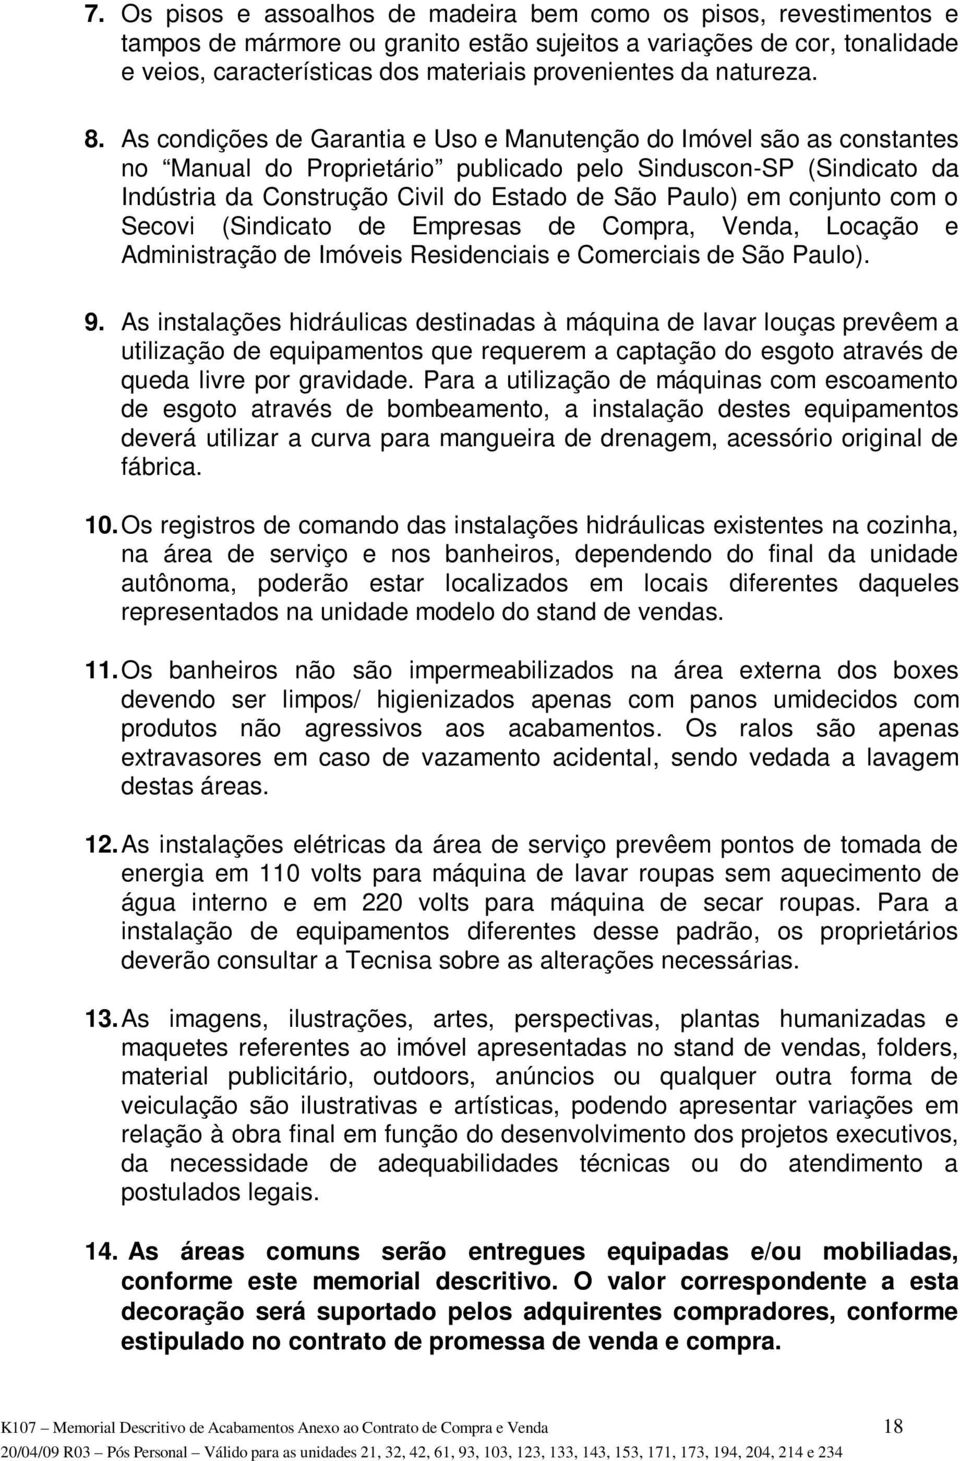 As condições de Garantia e Uso e Manutenção do Imóvel são as constantes no Manual do Proprietário publicado pelo Sinduscon-SP (Sindicato da Indústria da Construção Civil do Estado de São Paulo) em